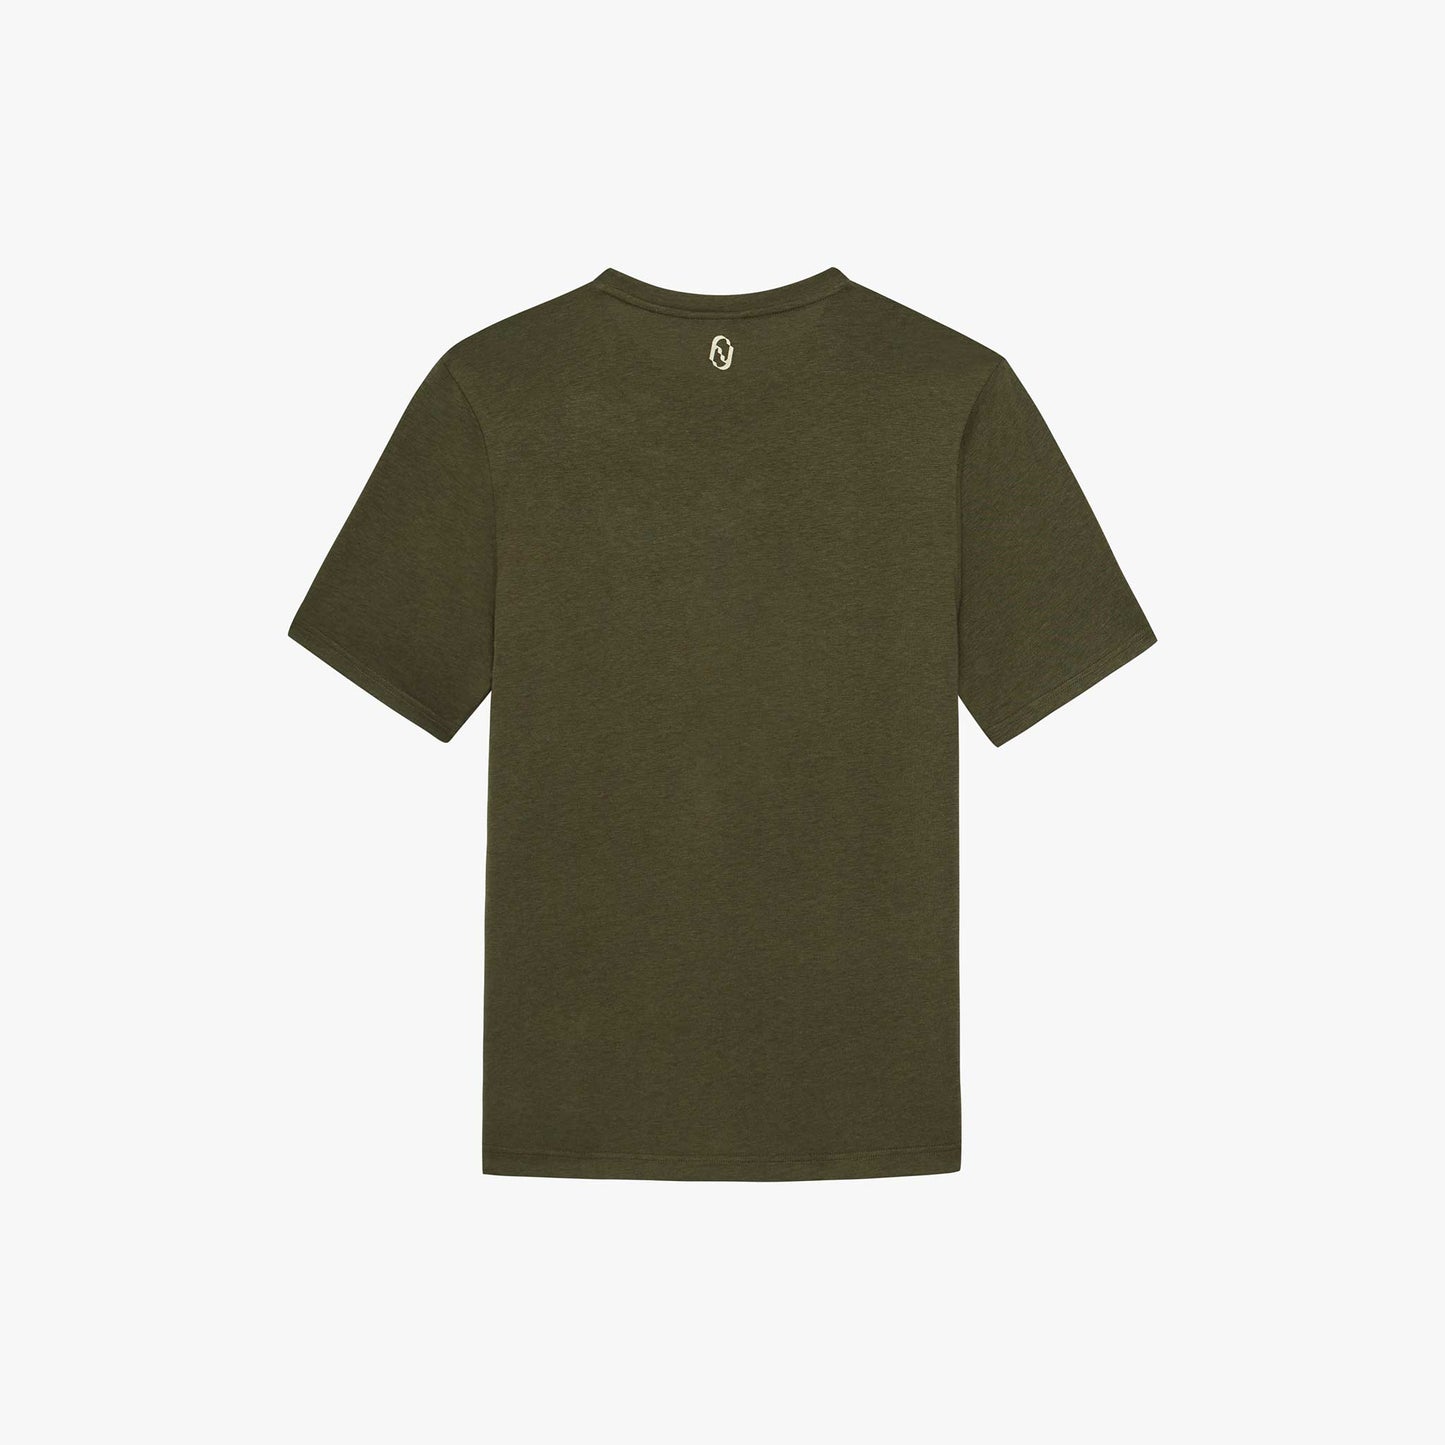 Men's LegacyTech T-Shirt - Khaki - Graphic